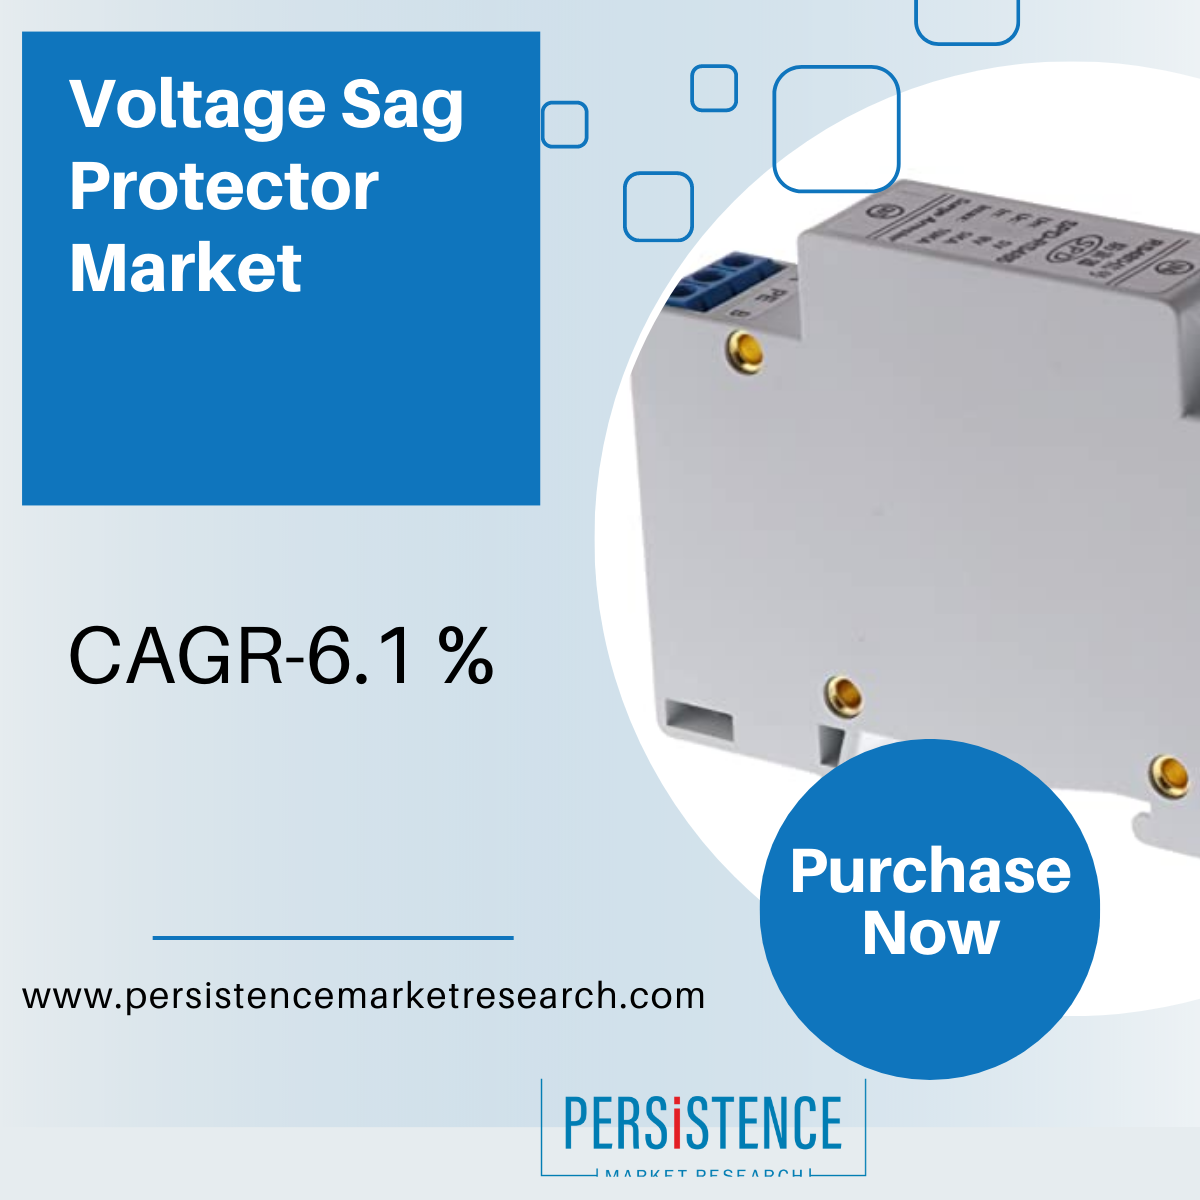 Voltage_Sag_Protector_Market1